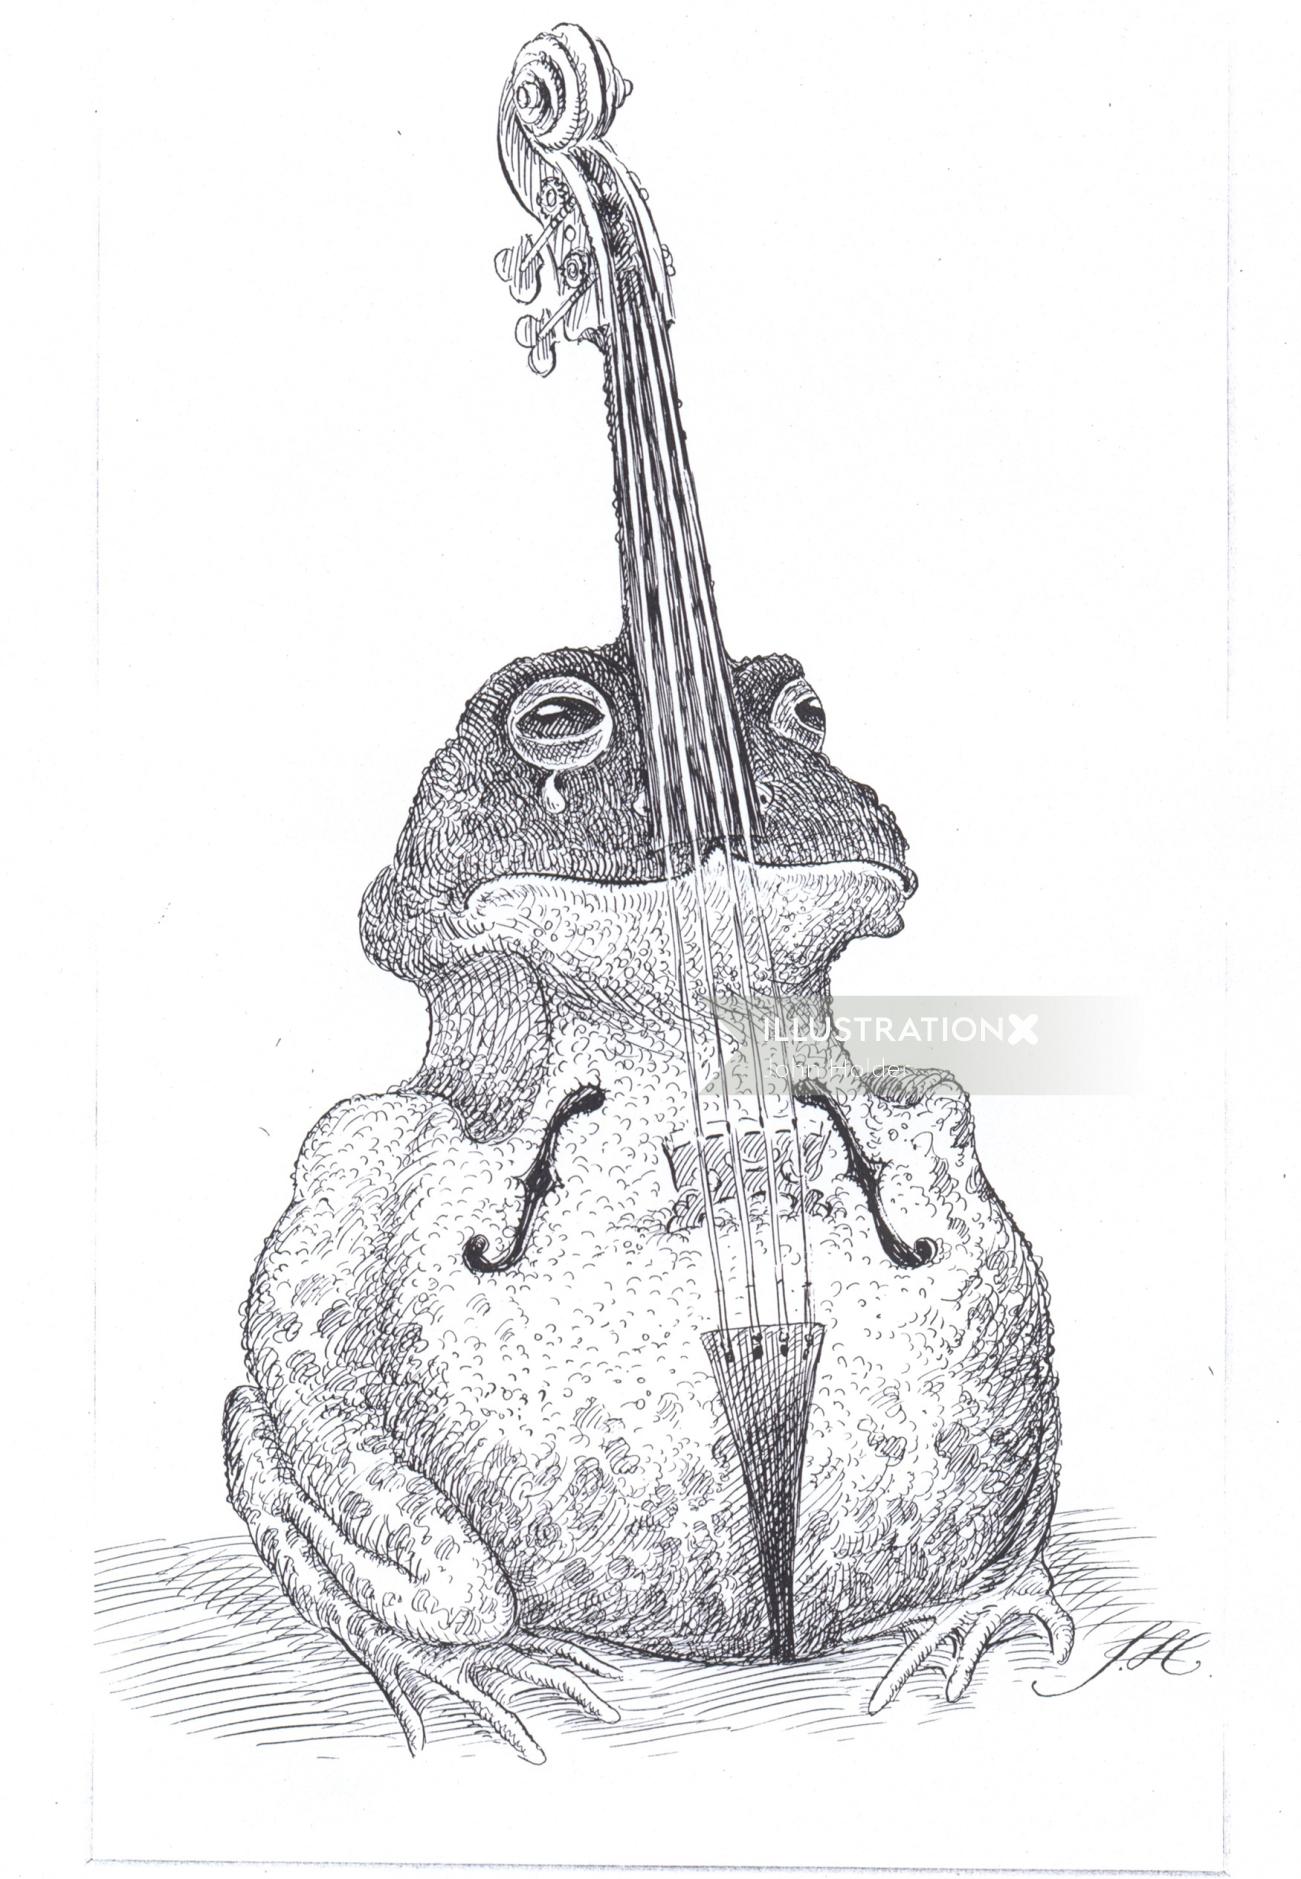 バイオリンの形をしたカエルの漫画とユーモアのベテランペンアート